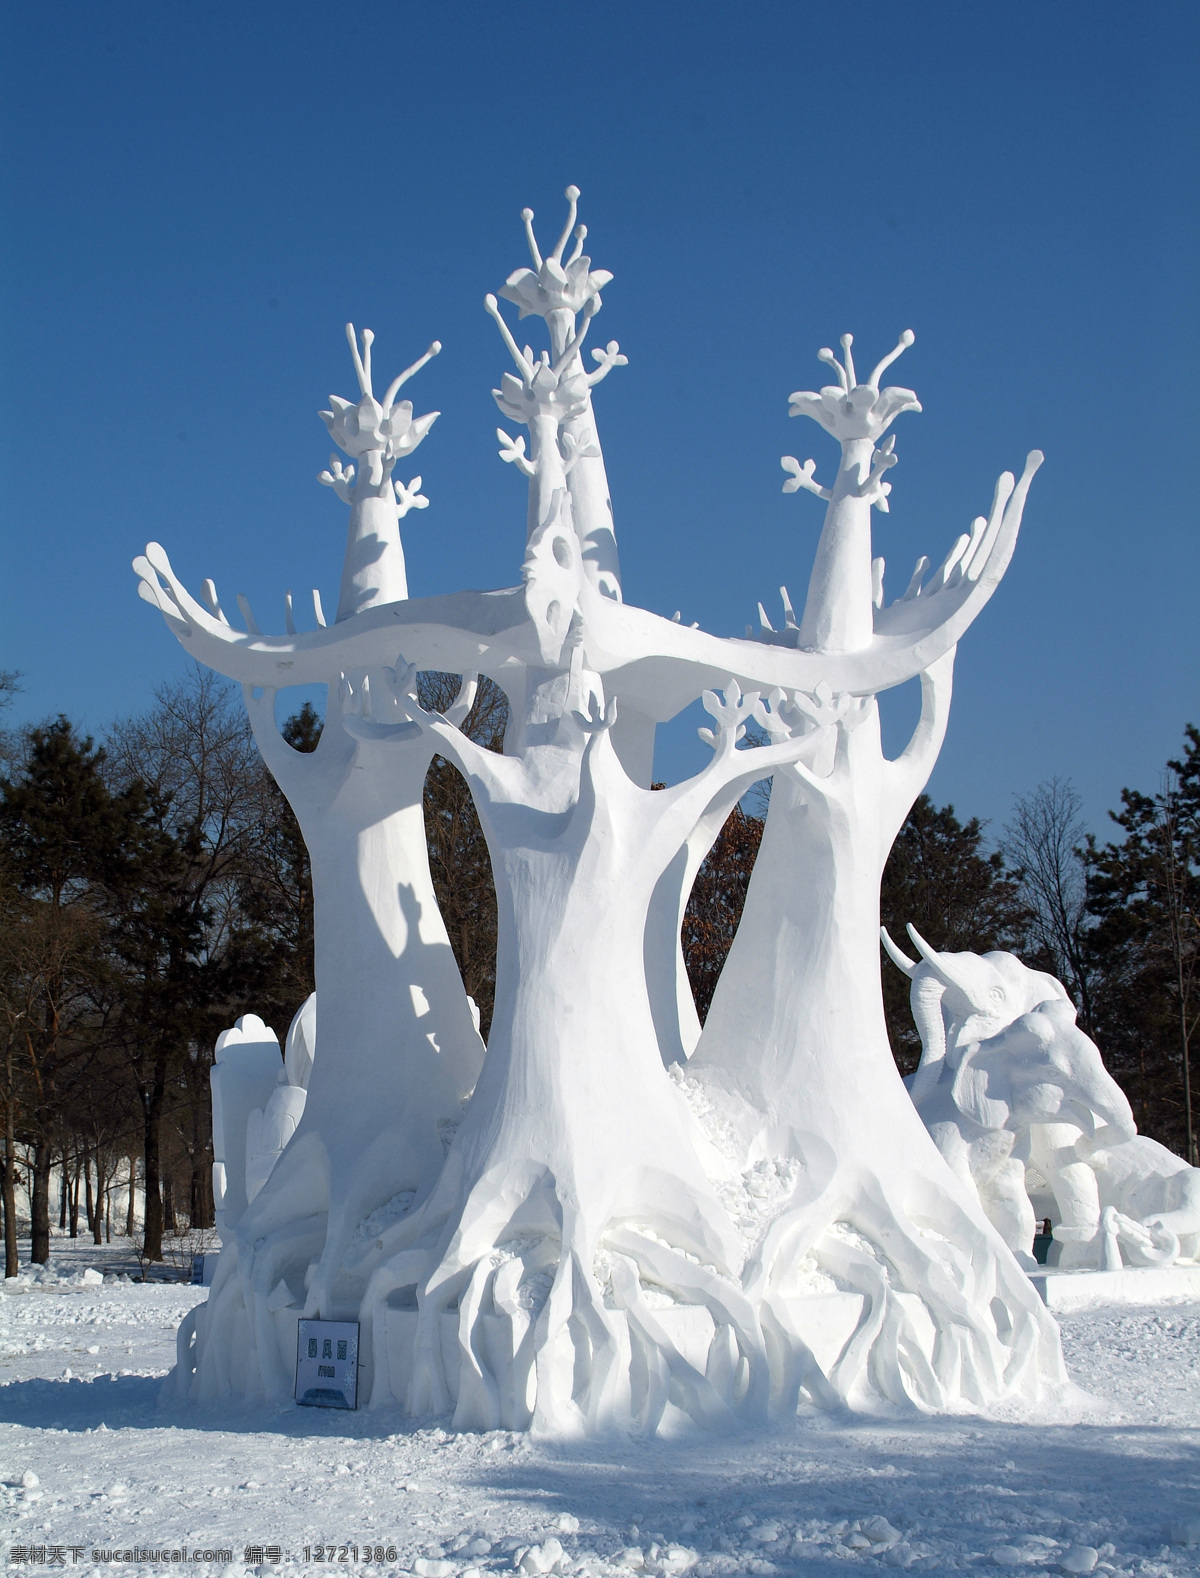 雪雕树 冰雪节 雪雕 冰雕 文化艺术